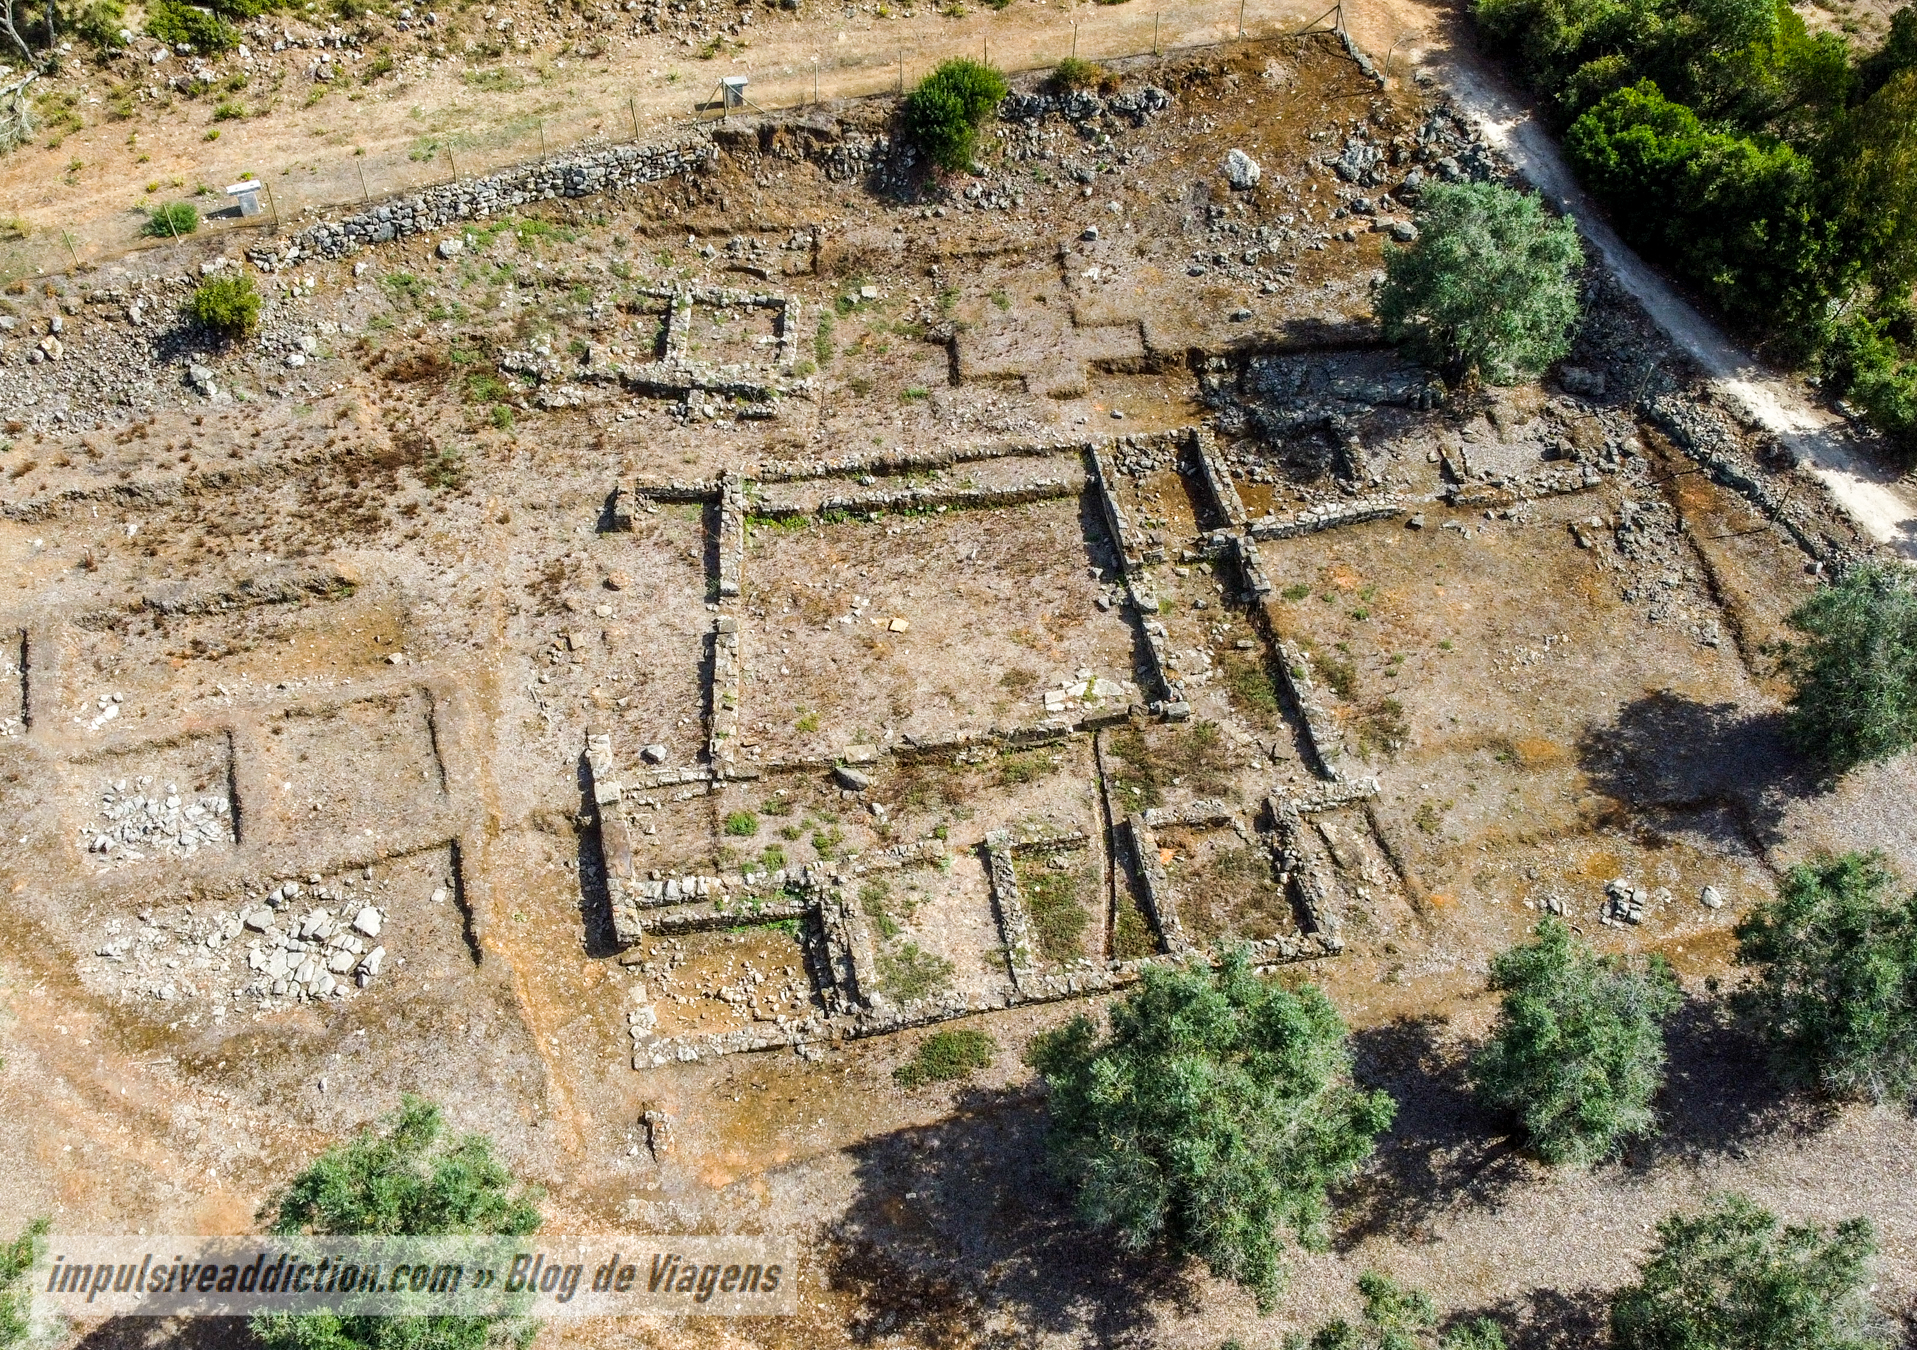 Parreitas Archaeological Site